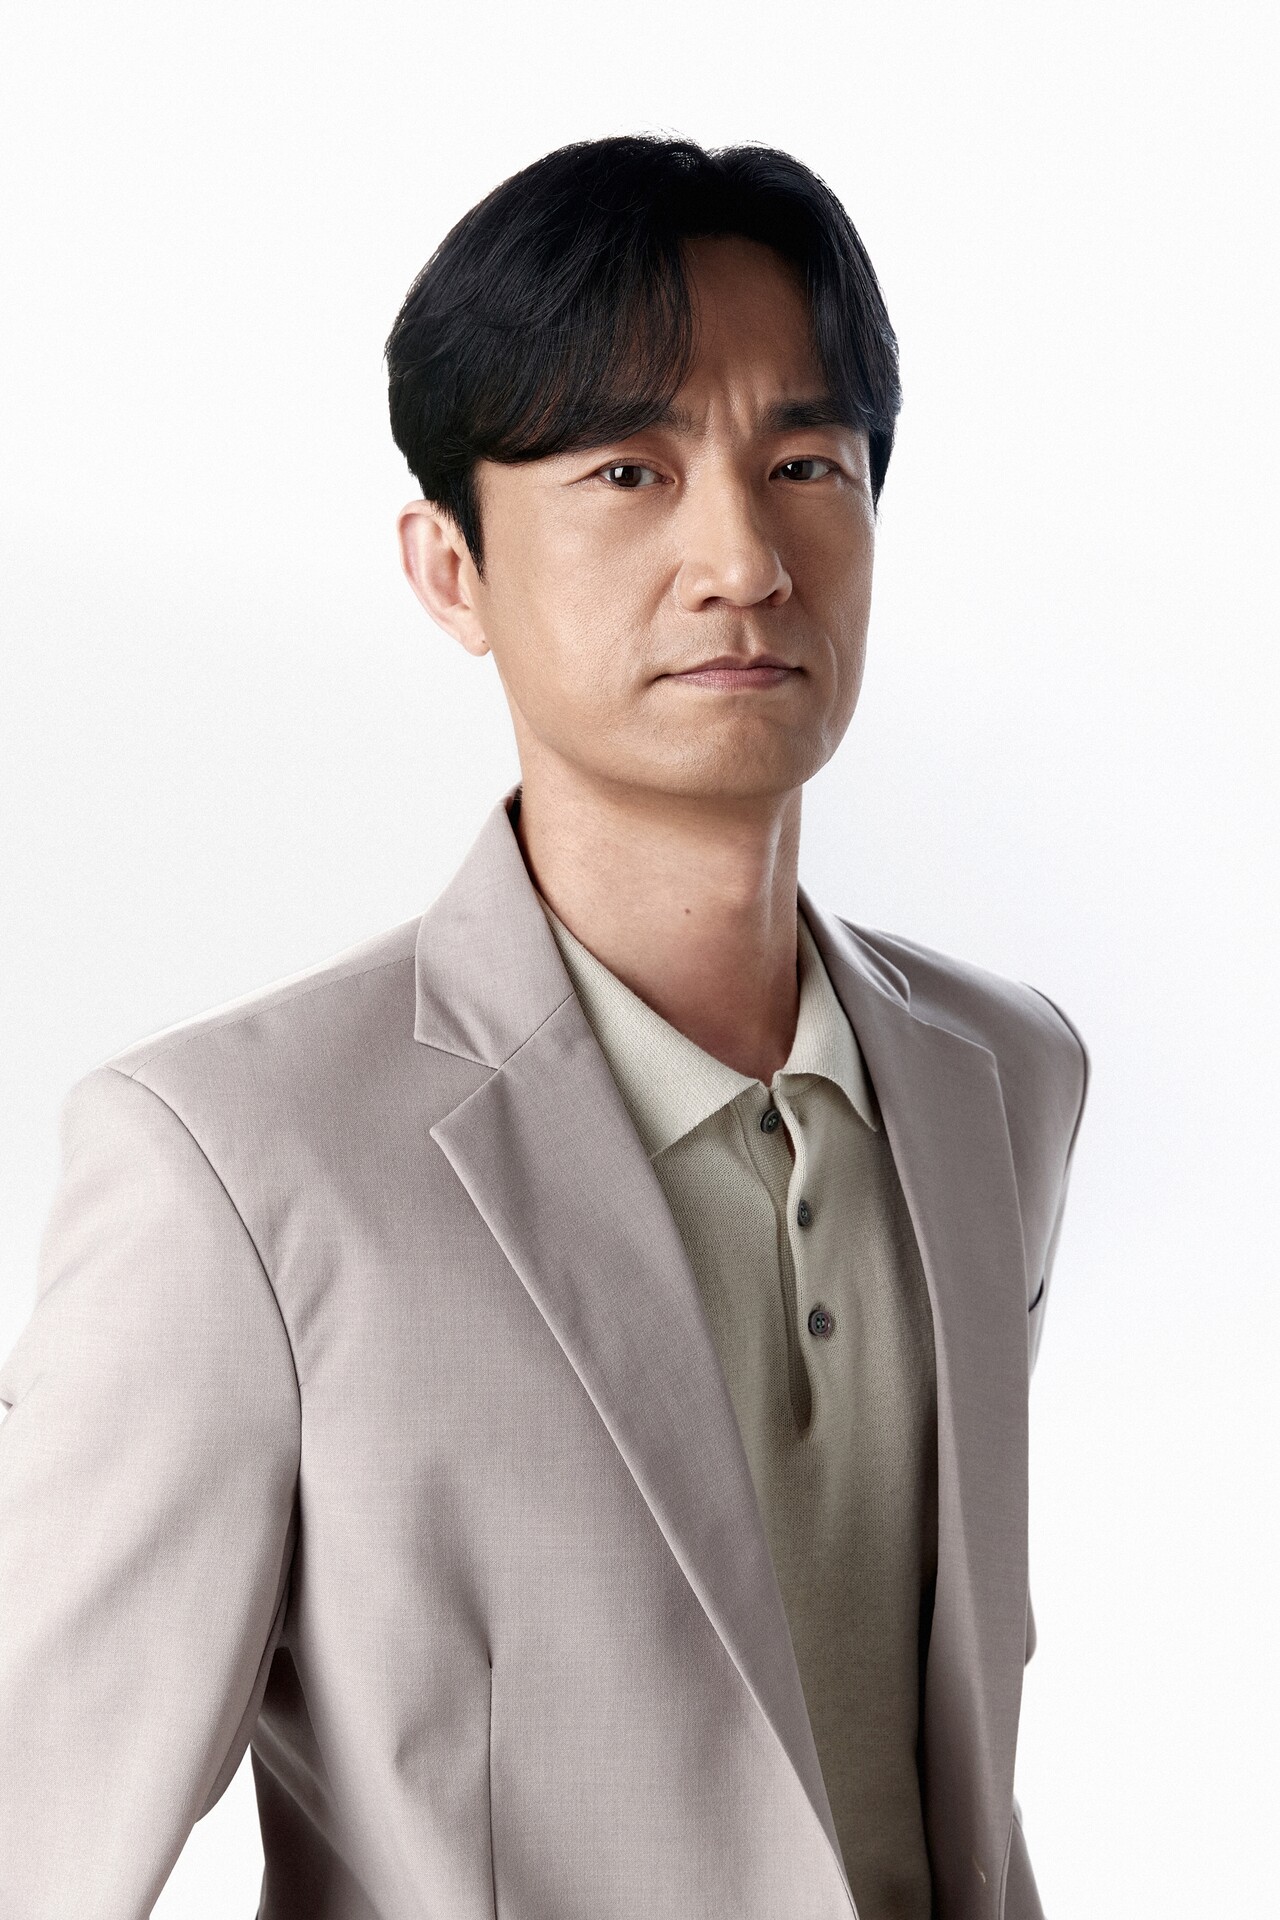 El actor Kim Byung Cheol.  Imagen = Compañía alienígena